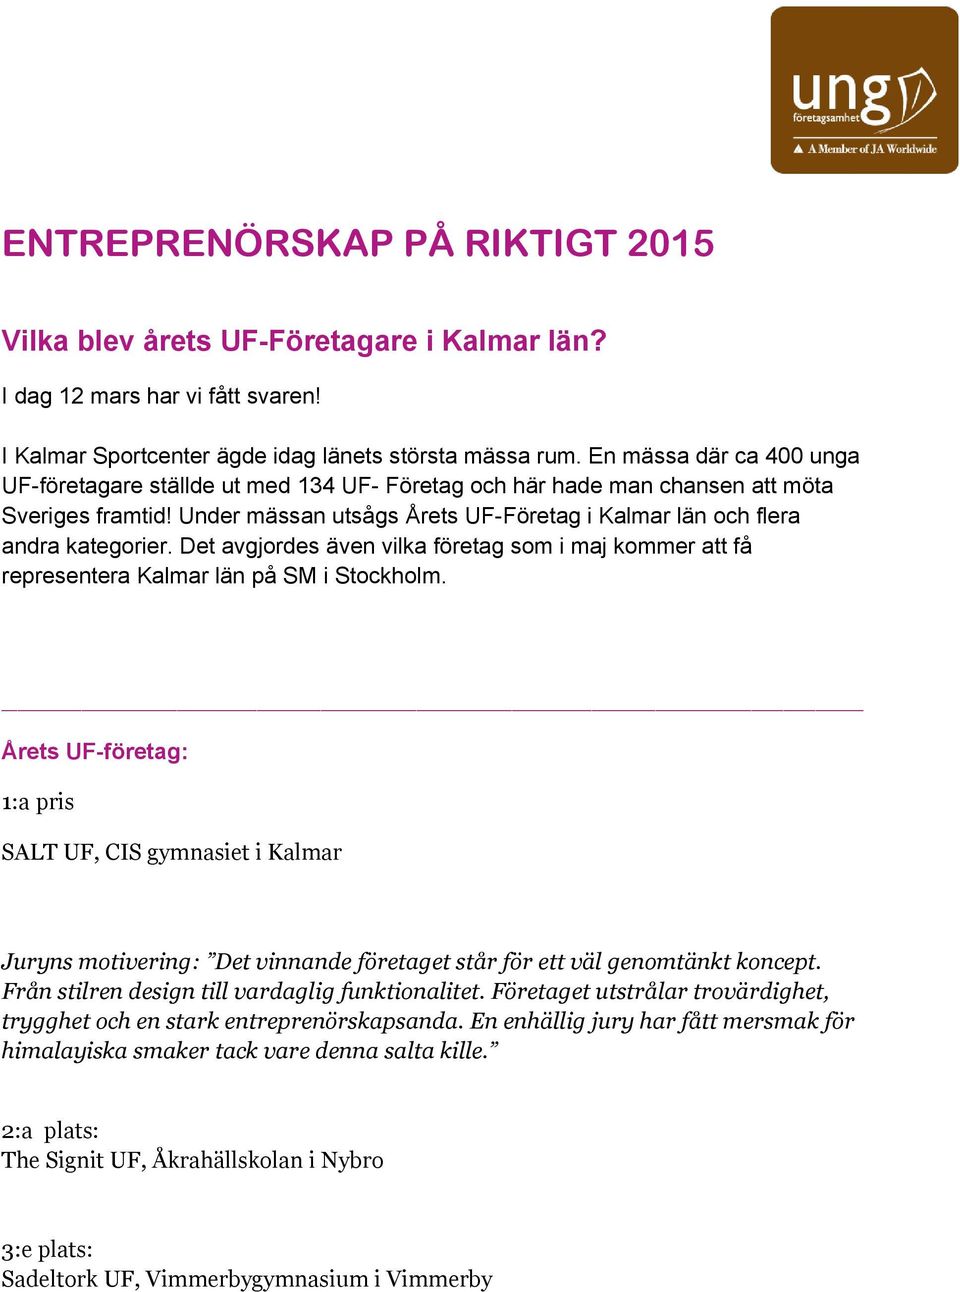 Det avgjordes även vilka företag som i maj kommer att få representera Kalmar län på SM i Stockholm.